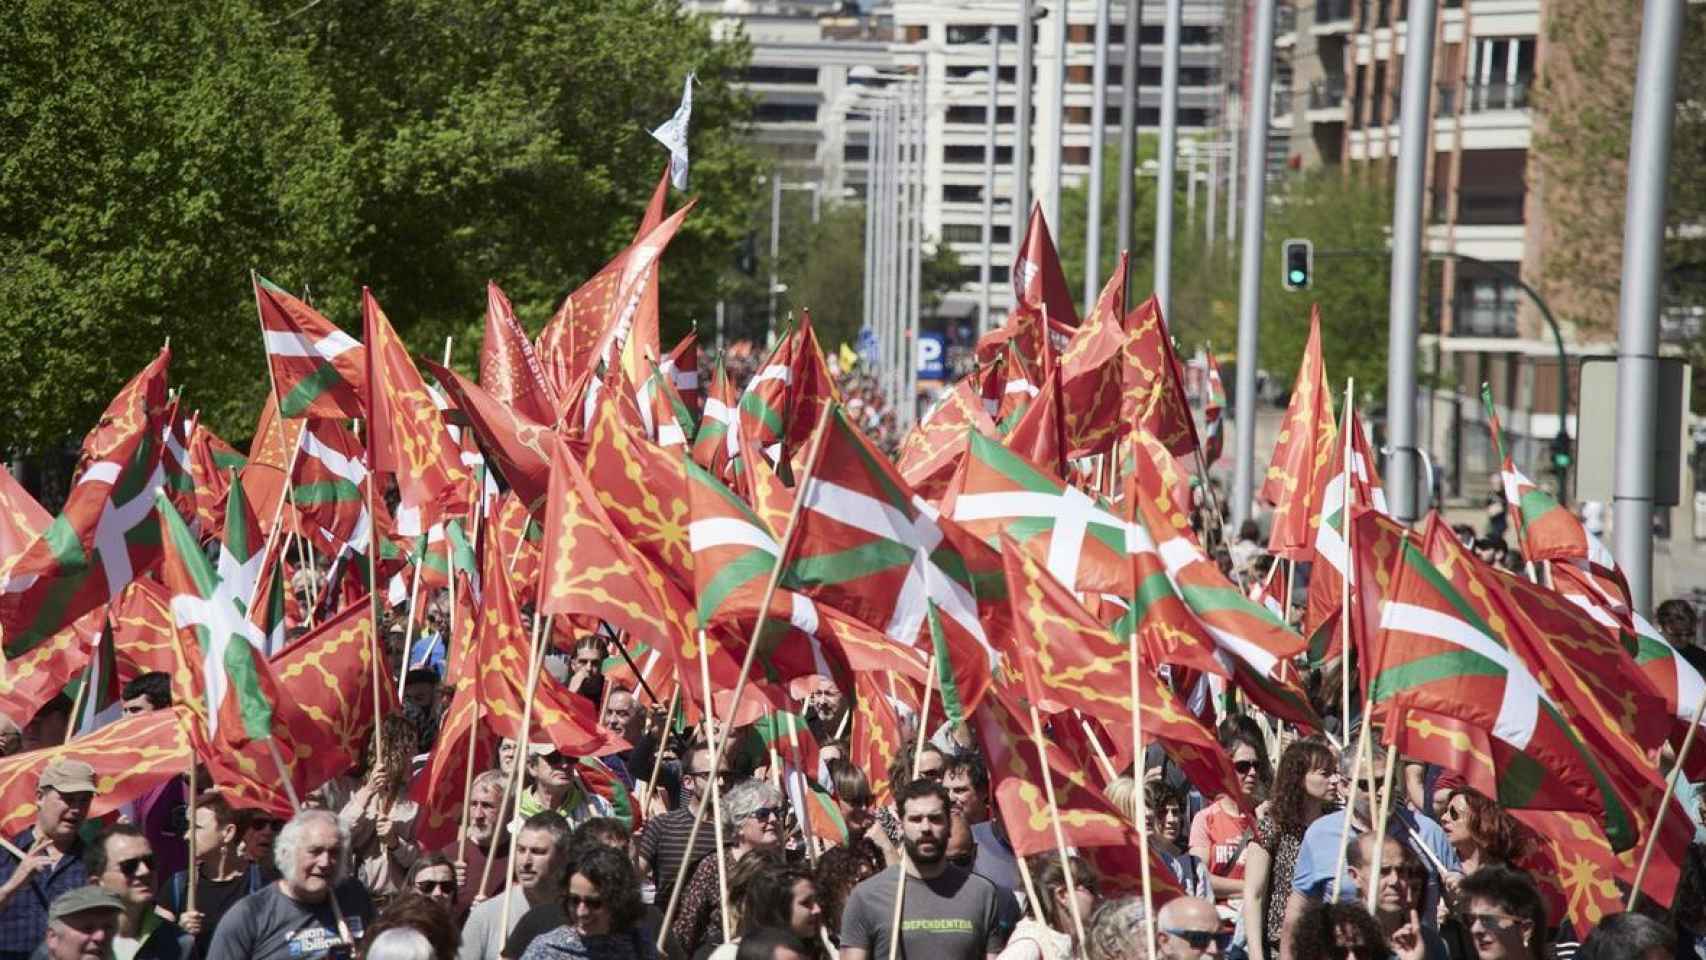 La desconexión inevitable de Euskadi contada por mis amigos de la ikastola